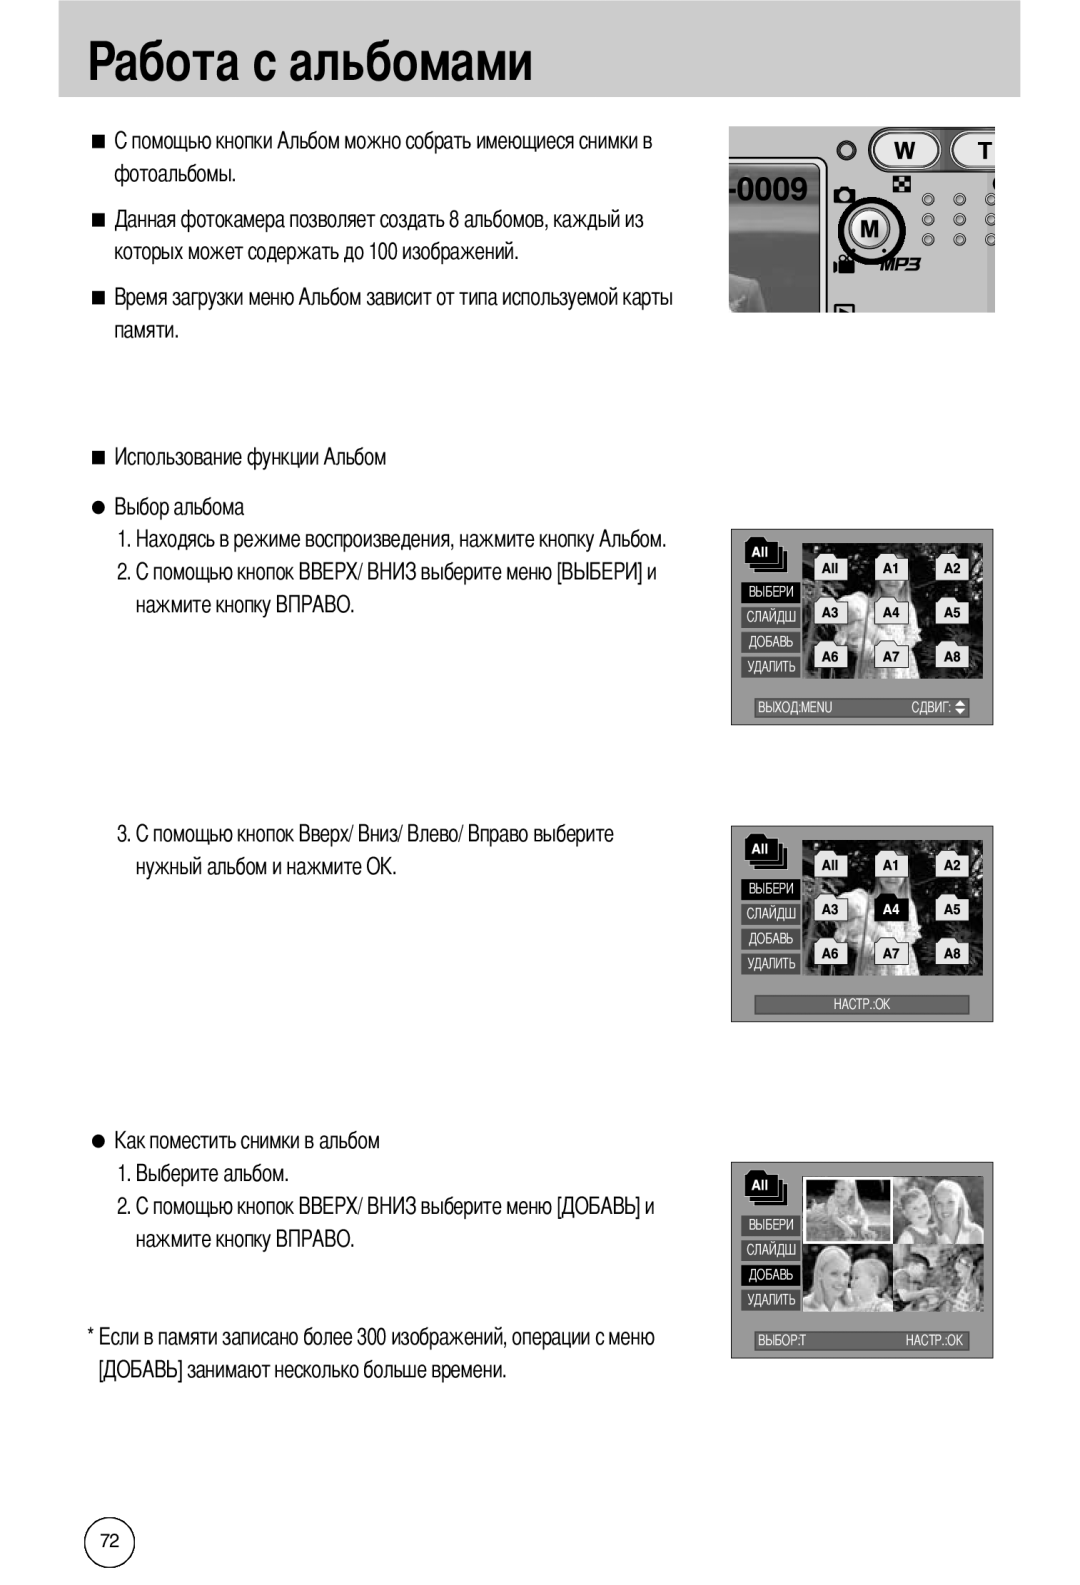 Samsung EC-I50ZZSBA/AS абота с альбомами, фотоальбомы которых может содержать до 100 изображений памяти, нажмите кнопку 